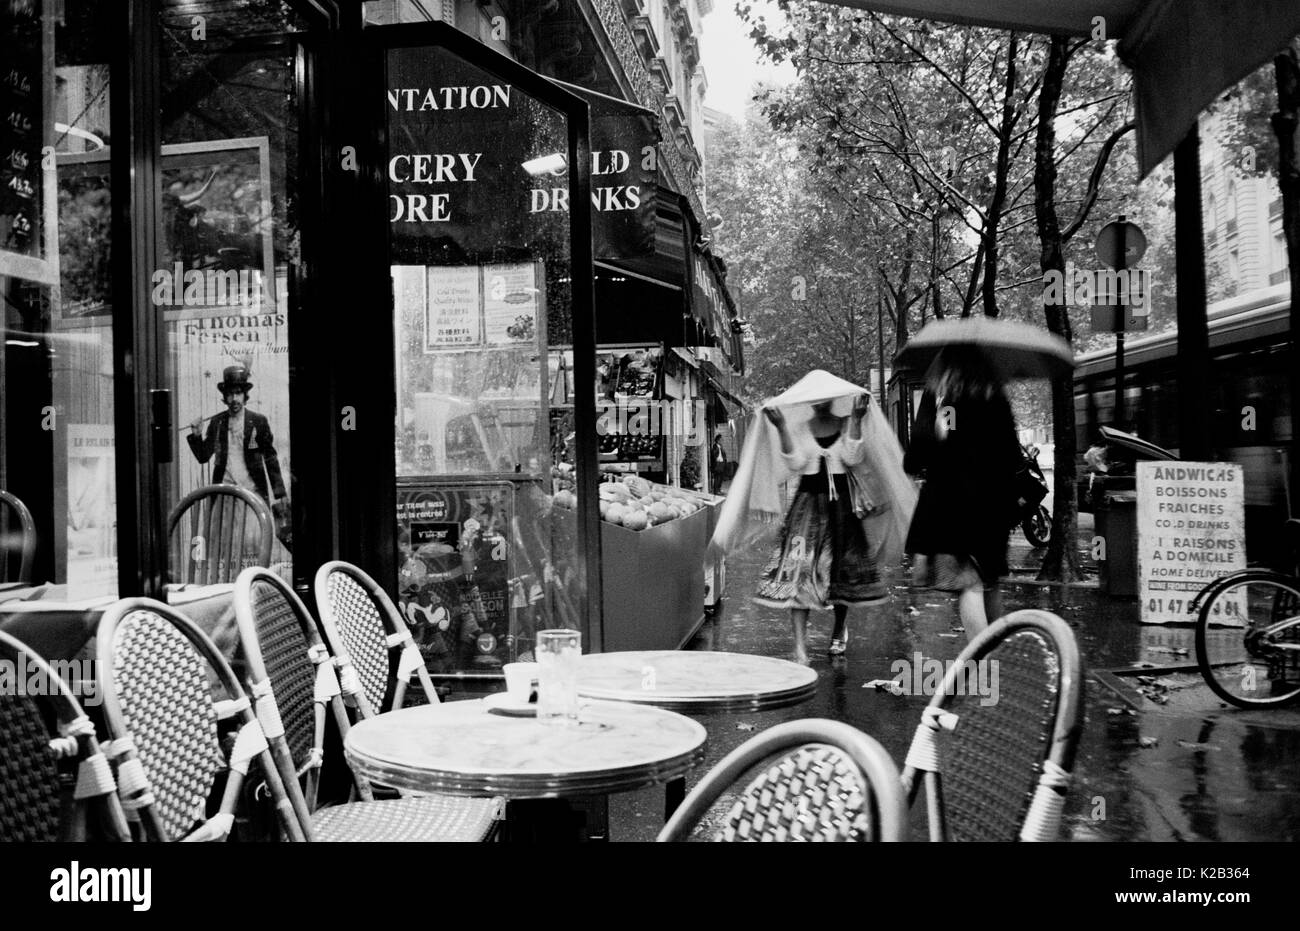 DOCCIA A PIOGGIA PARIGI - PARIS CAFE TERRASSE - AVENUE DE SUFFREN - PARIS LEICA STREET PHOTOGRAPHY - SIVER FILM © Frédéric BEAUMONT Foto Stock